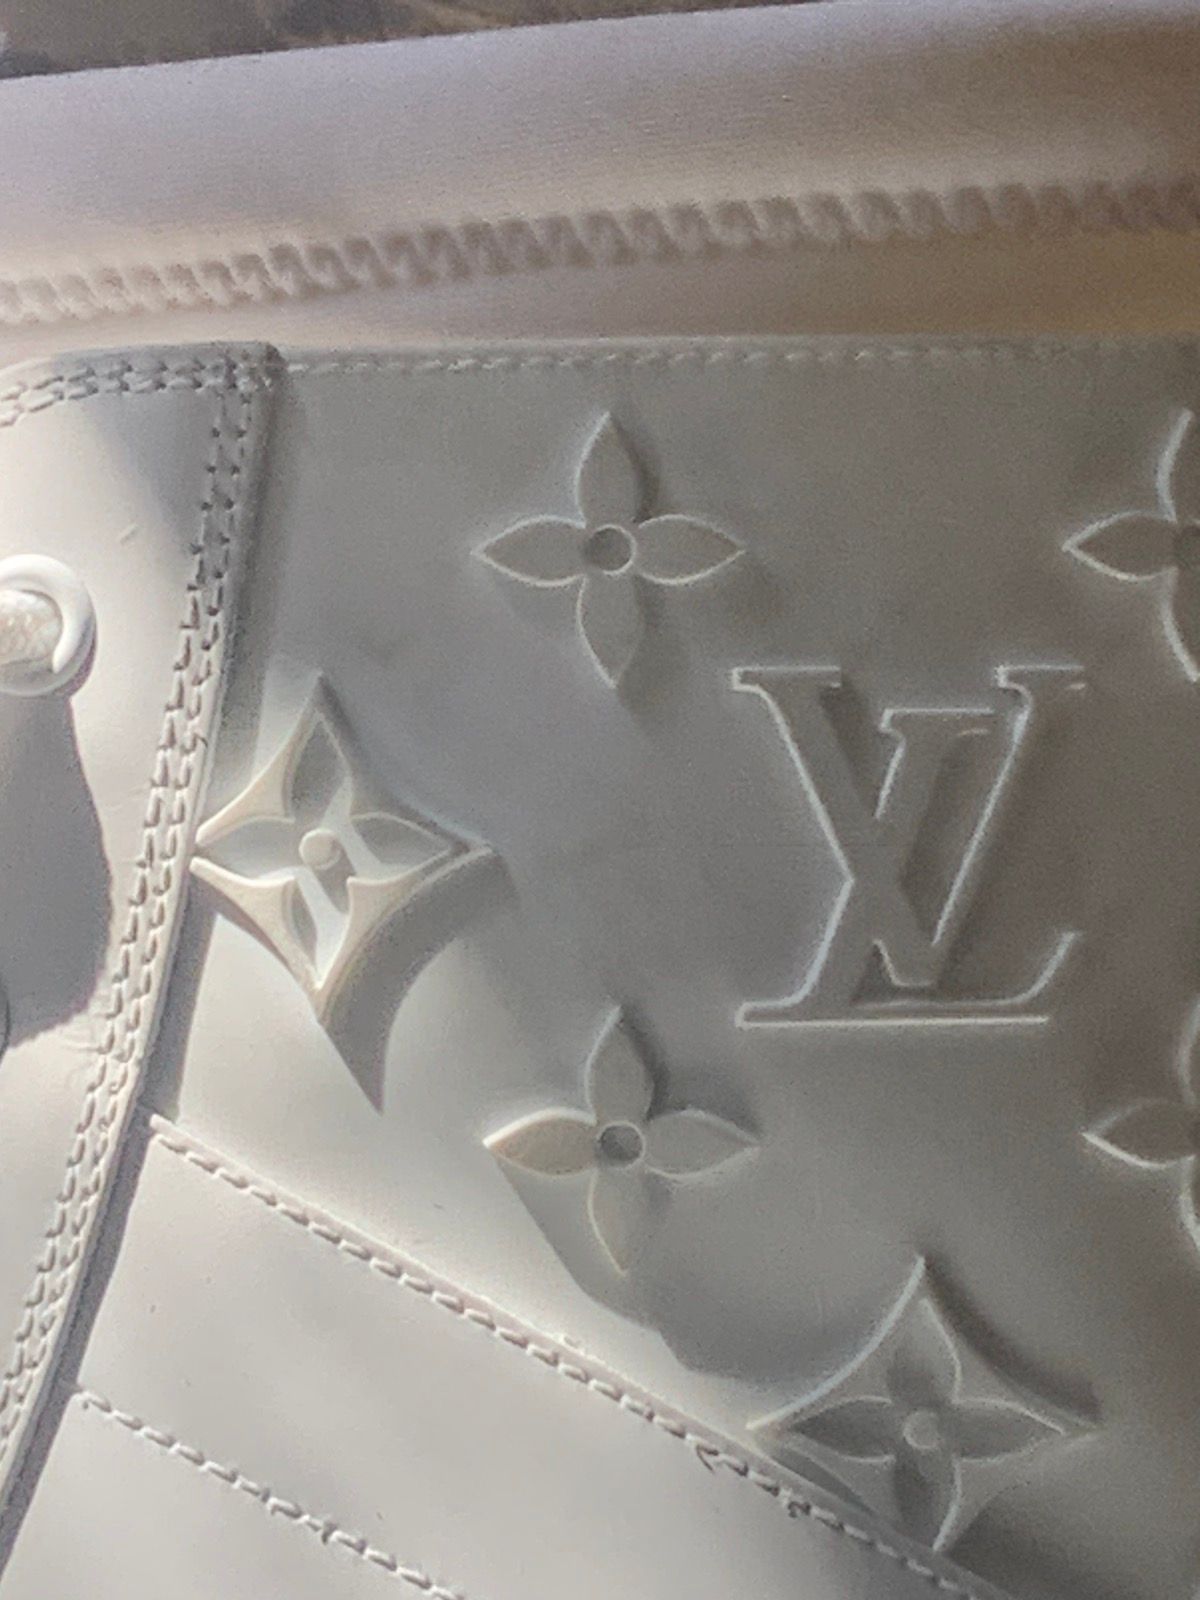 Louis Vuitton All white Louis Vuitton landscape boots Size US 7.5 / EU 40-41 - 8 Thumbnail